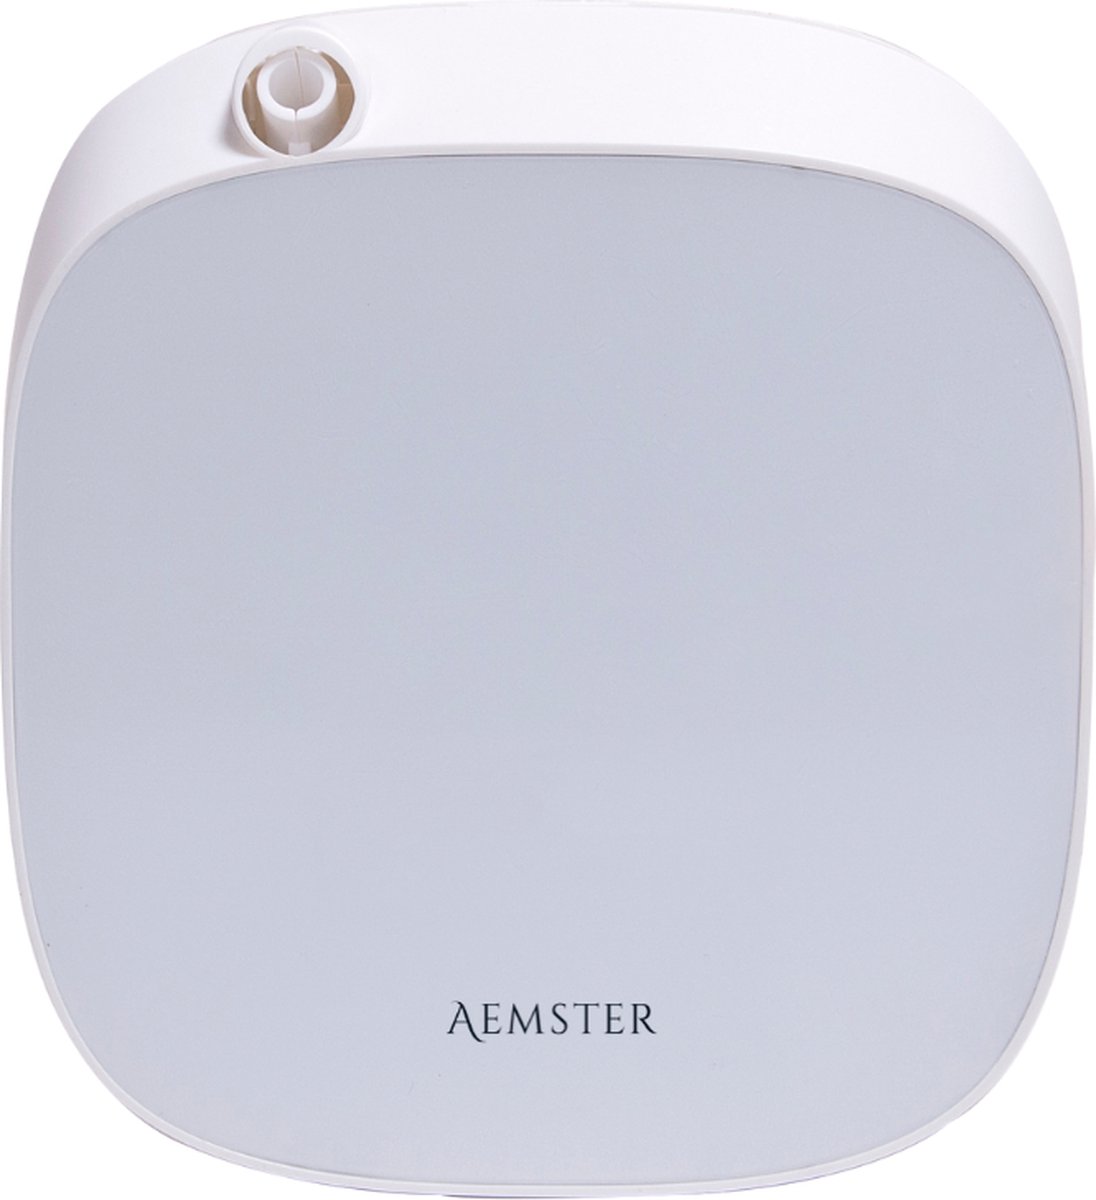 Aemster - Wally Wit - Bluetooth Aroma diffuser voor geur olie, essentiële olie en huisparfum - Wand model koude lucht geurverspreider